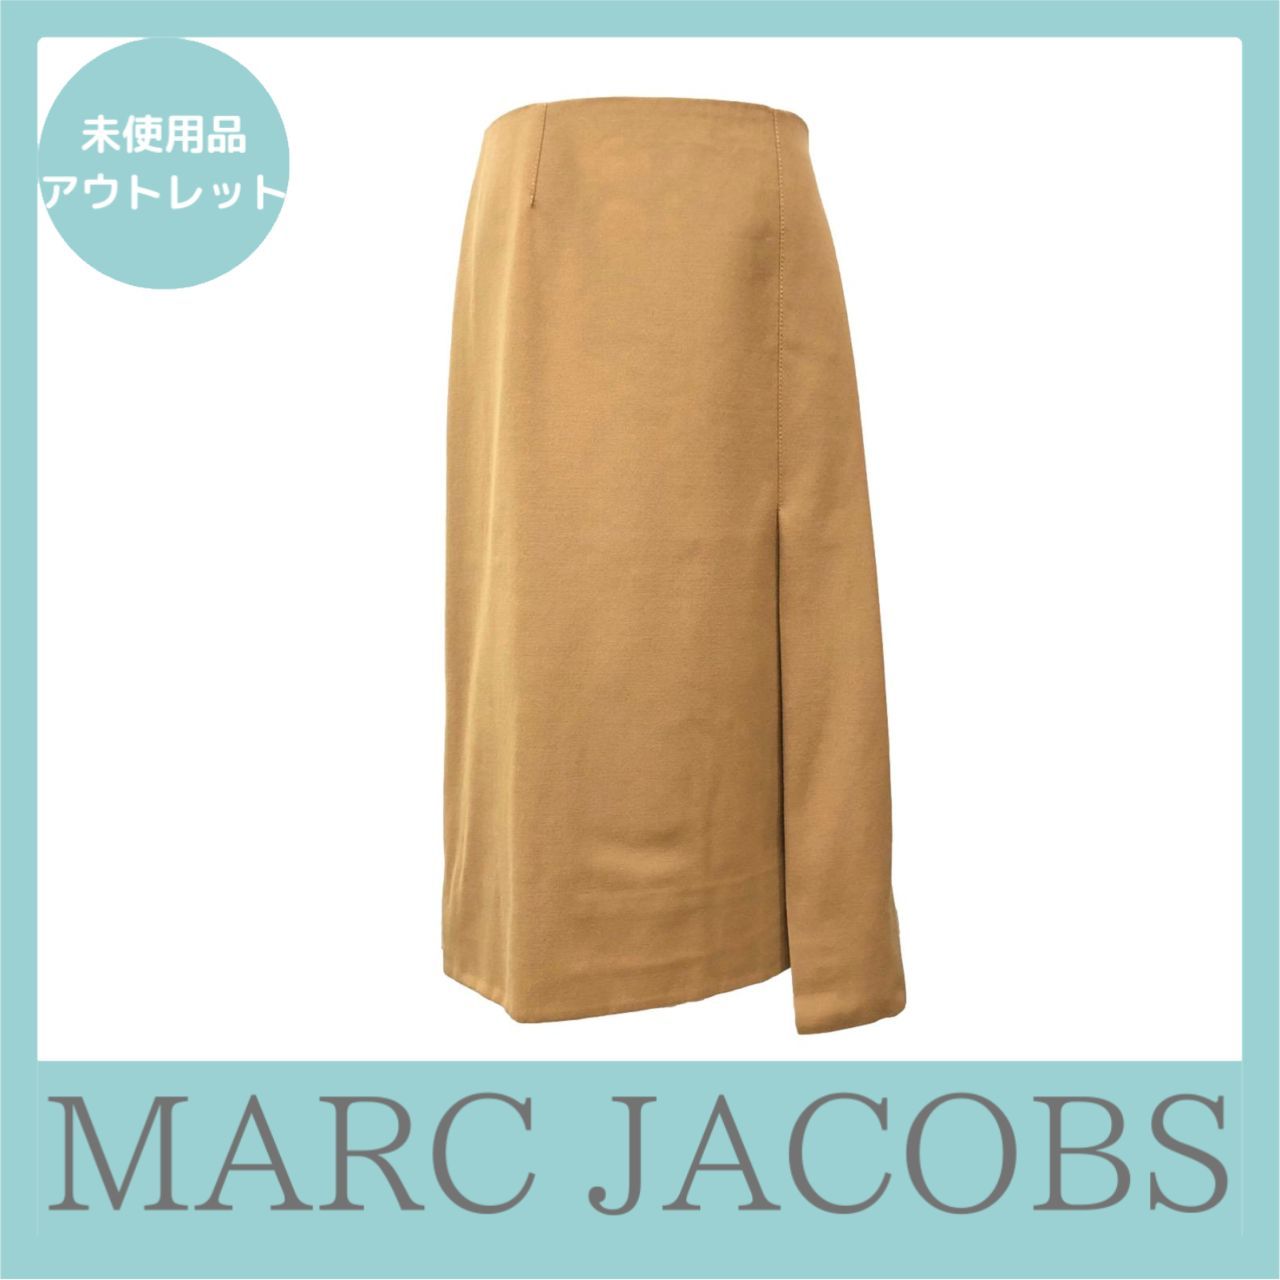 MARC JACOBS マークジェイコブス サイドジップスカート 0 サイズ